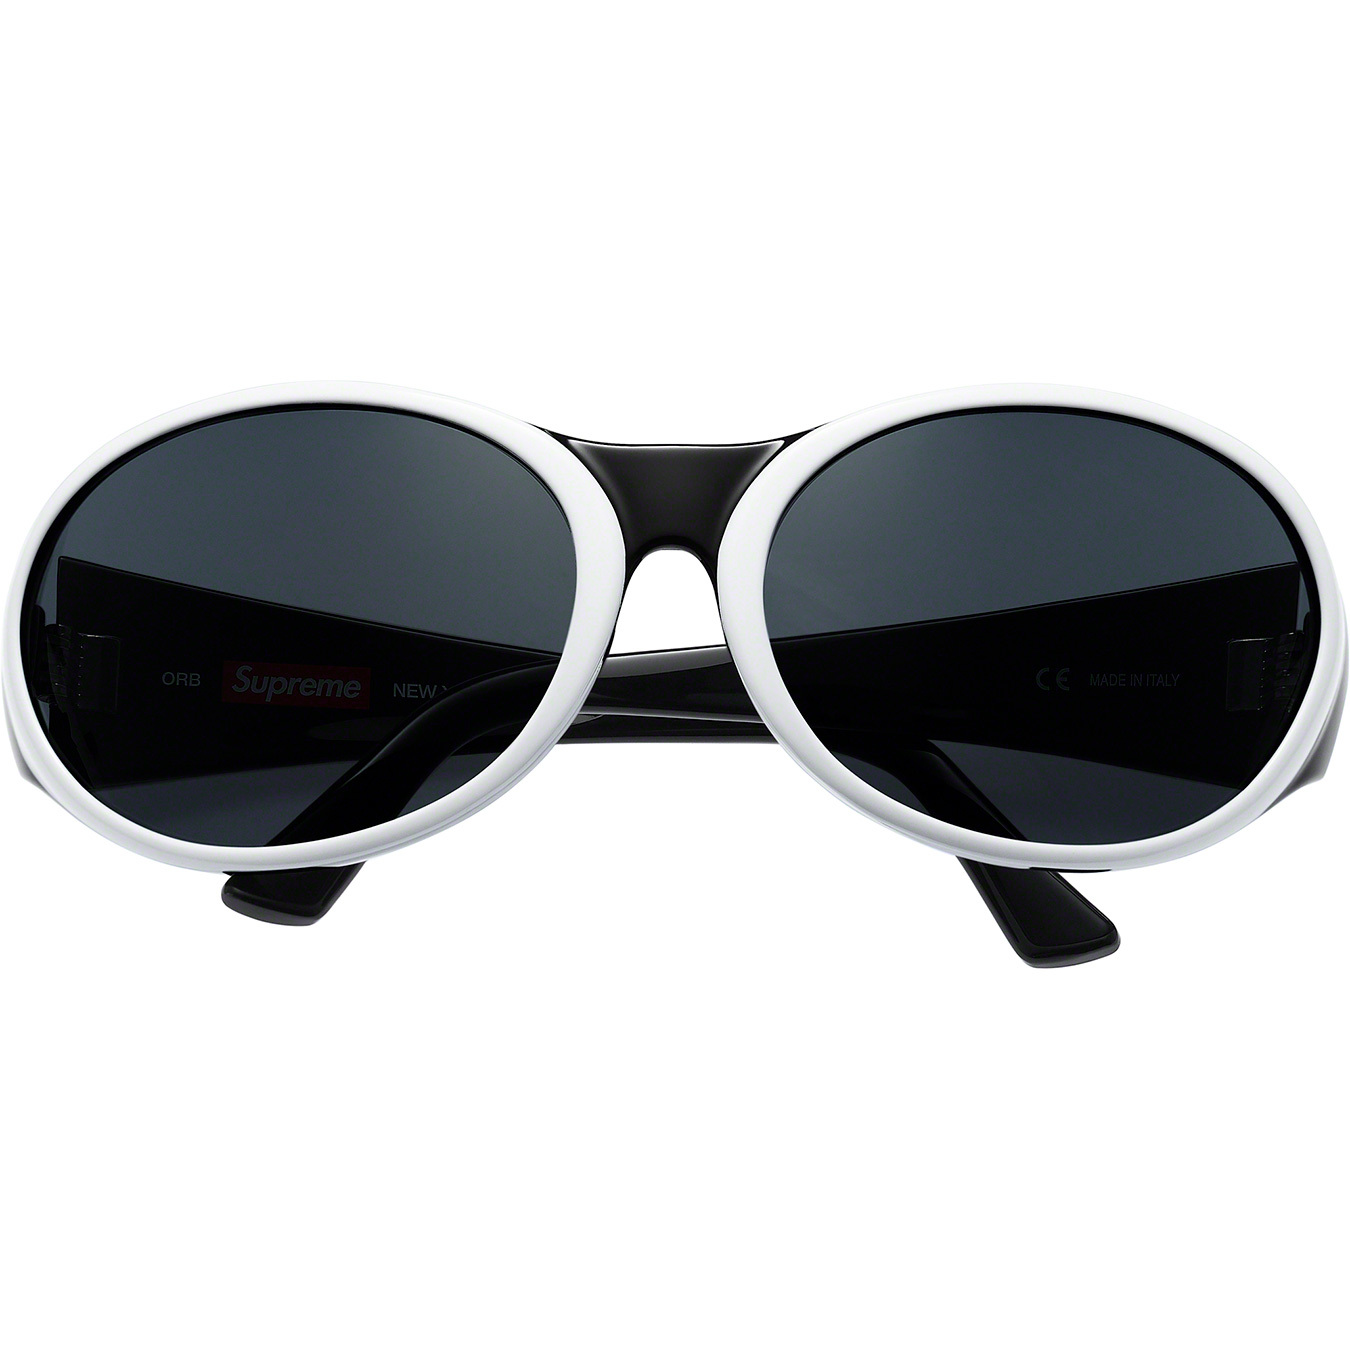 Supreme Orb Sunglasses